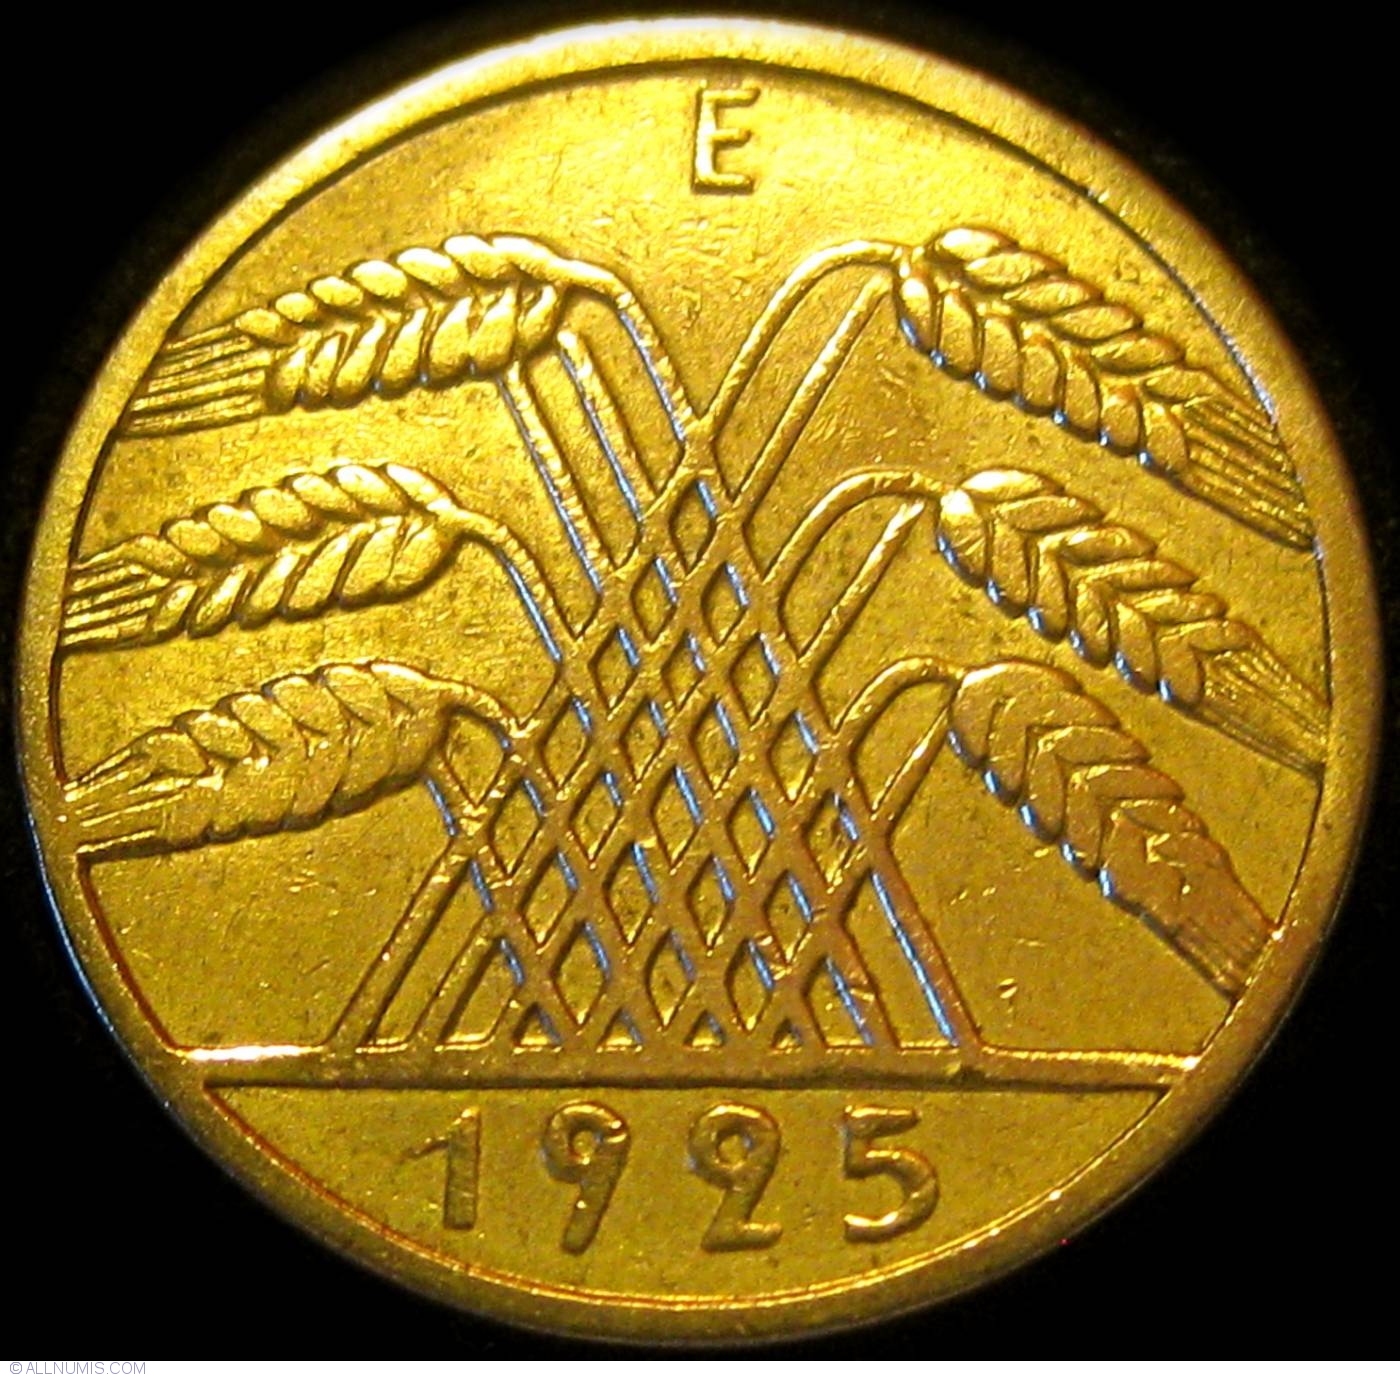 10 Reichspfennig 1925 E, Weimar Republic (1919-1932) - Germany - Coin - 23427